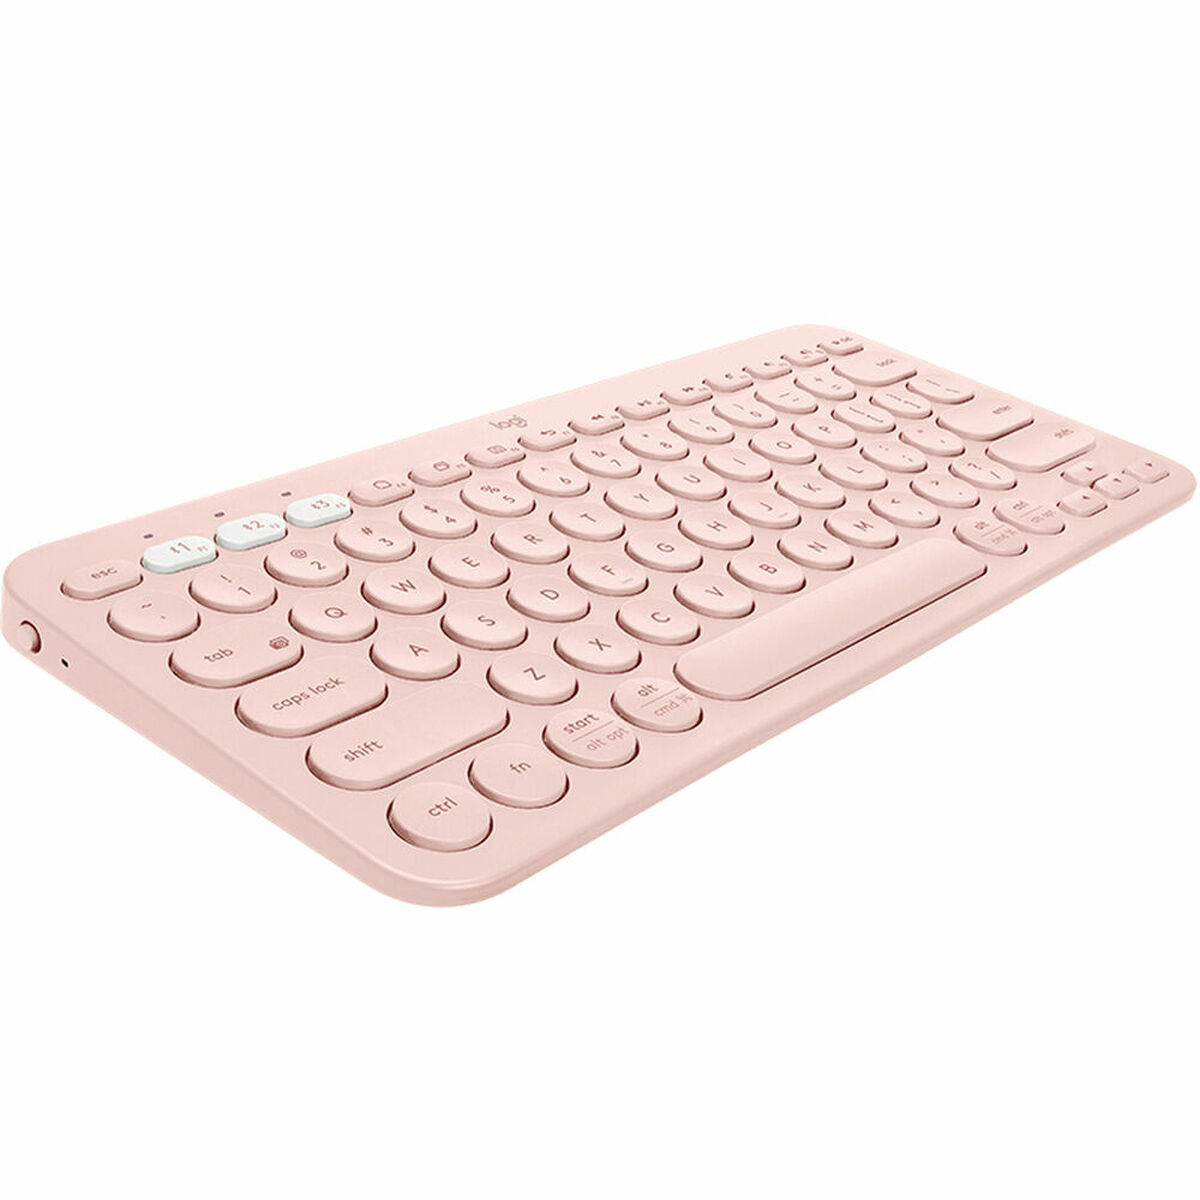 Drahtlose Tastatur Logitech K380  Rosa Qwerty Spanisch